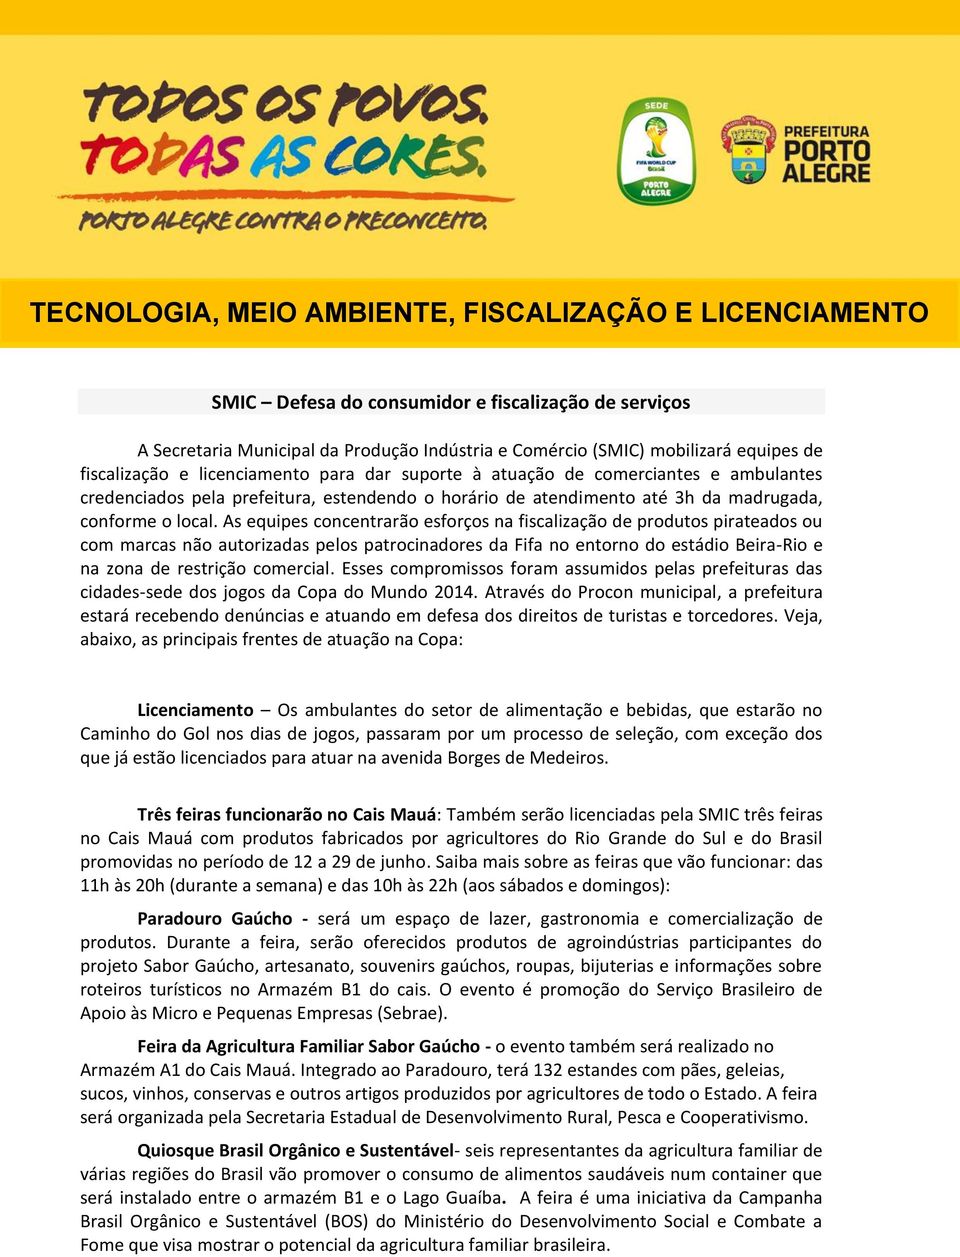 As equipes concentrarão esforços na fiscalização de produtos pirateados ou com marcas não autorizadas pelos patrocinadores da Fifa no entorno do estádio Beira-Rio e na zona de restrição comercial.